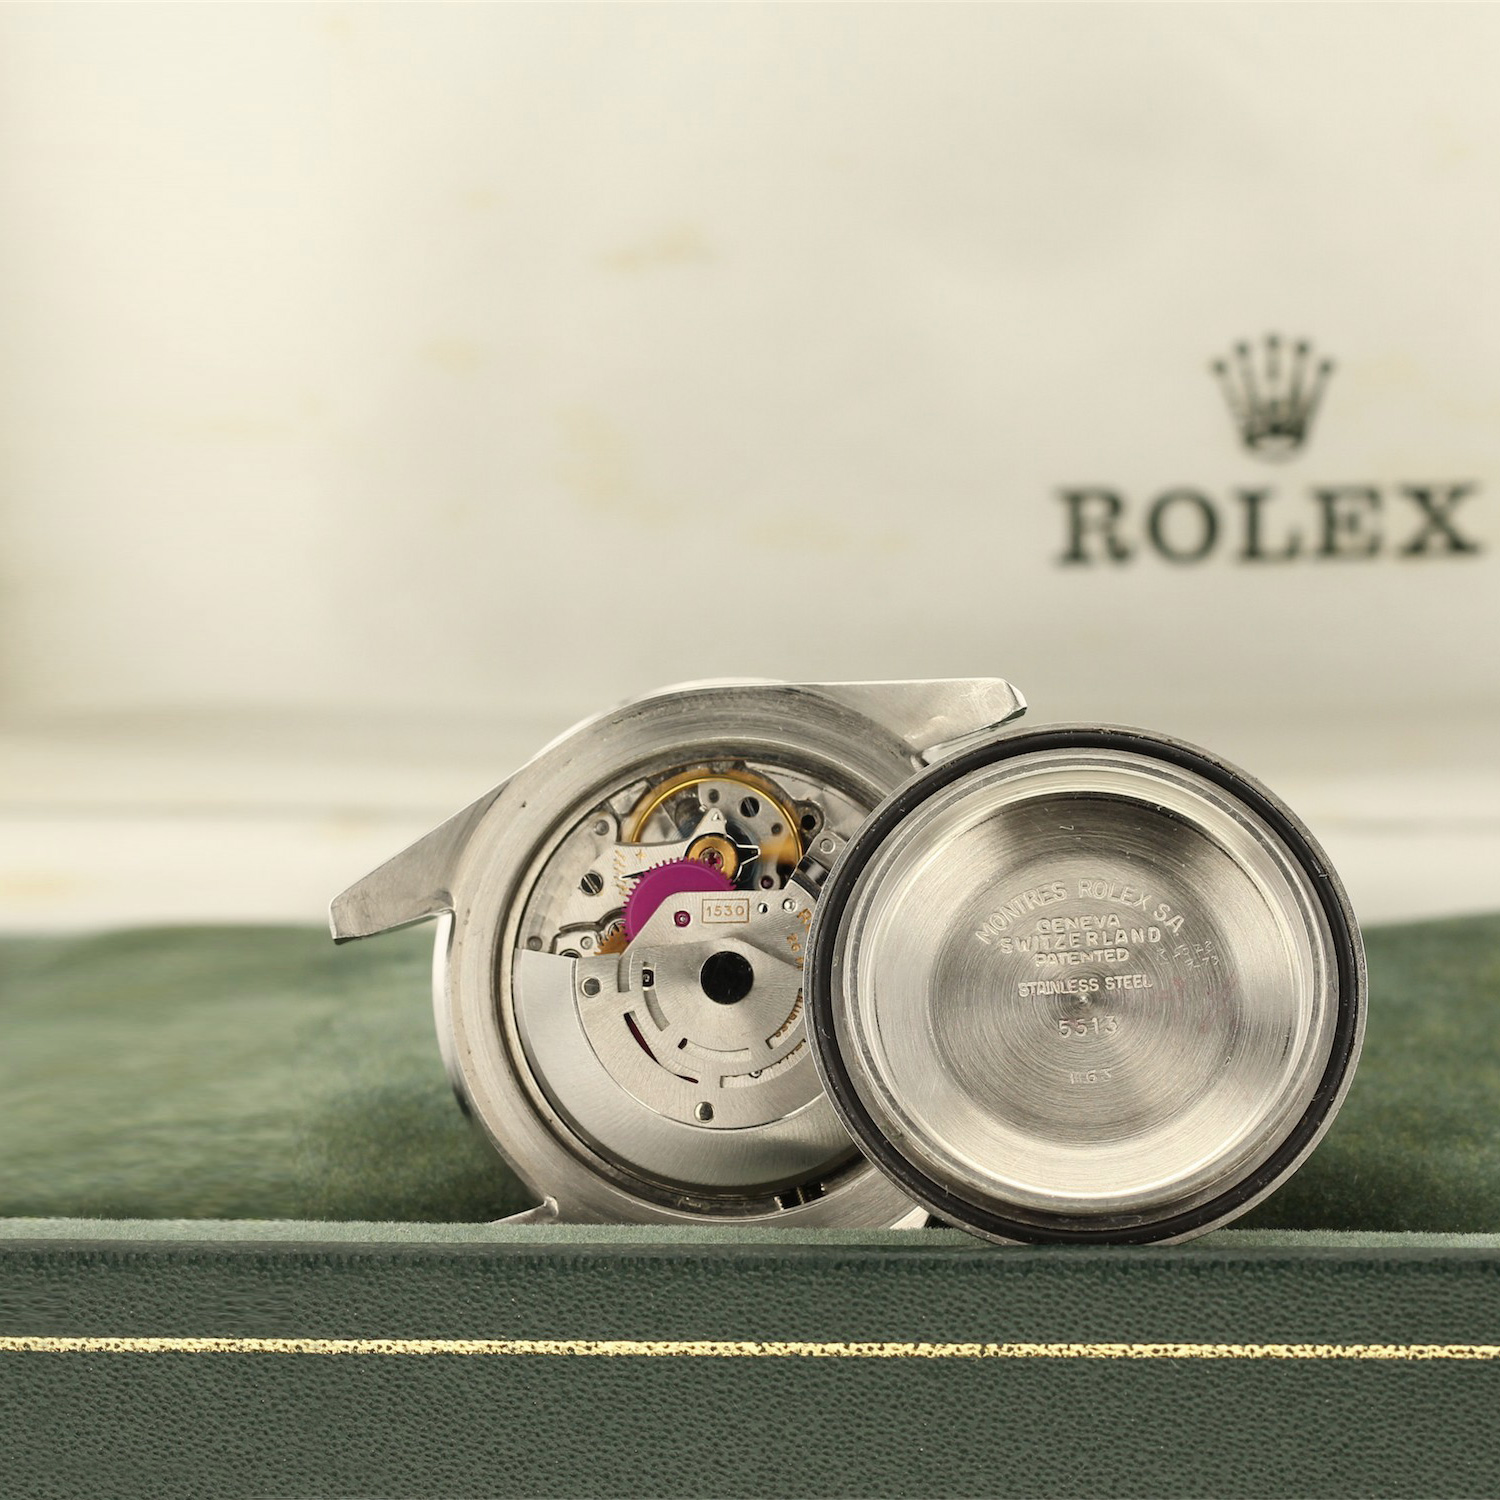 Rolex 5513 Submariner mouvement 1530